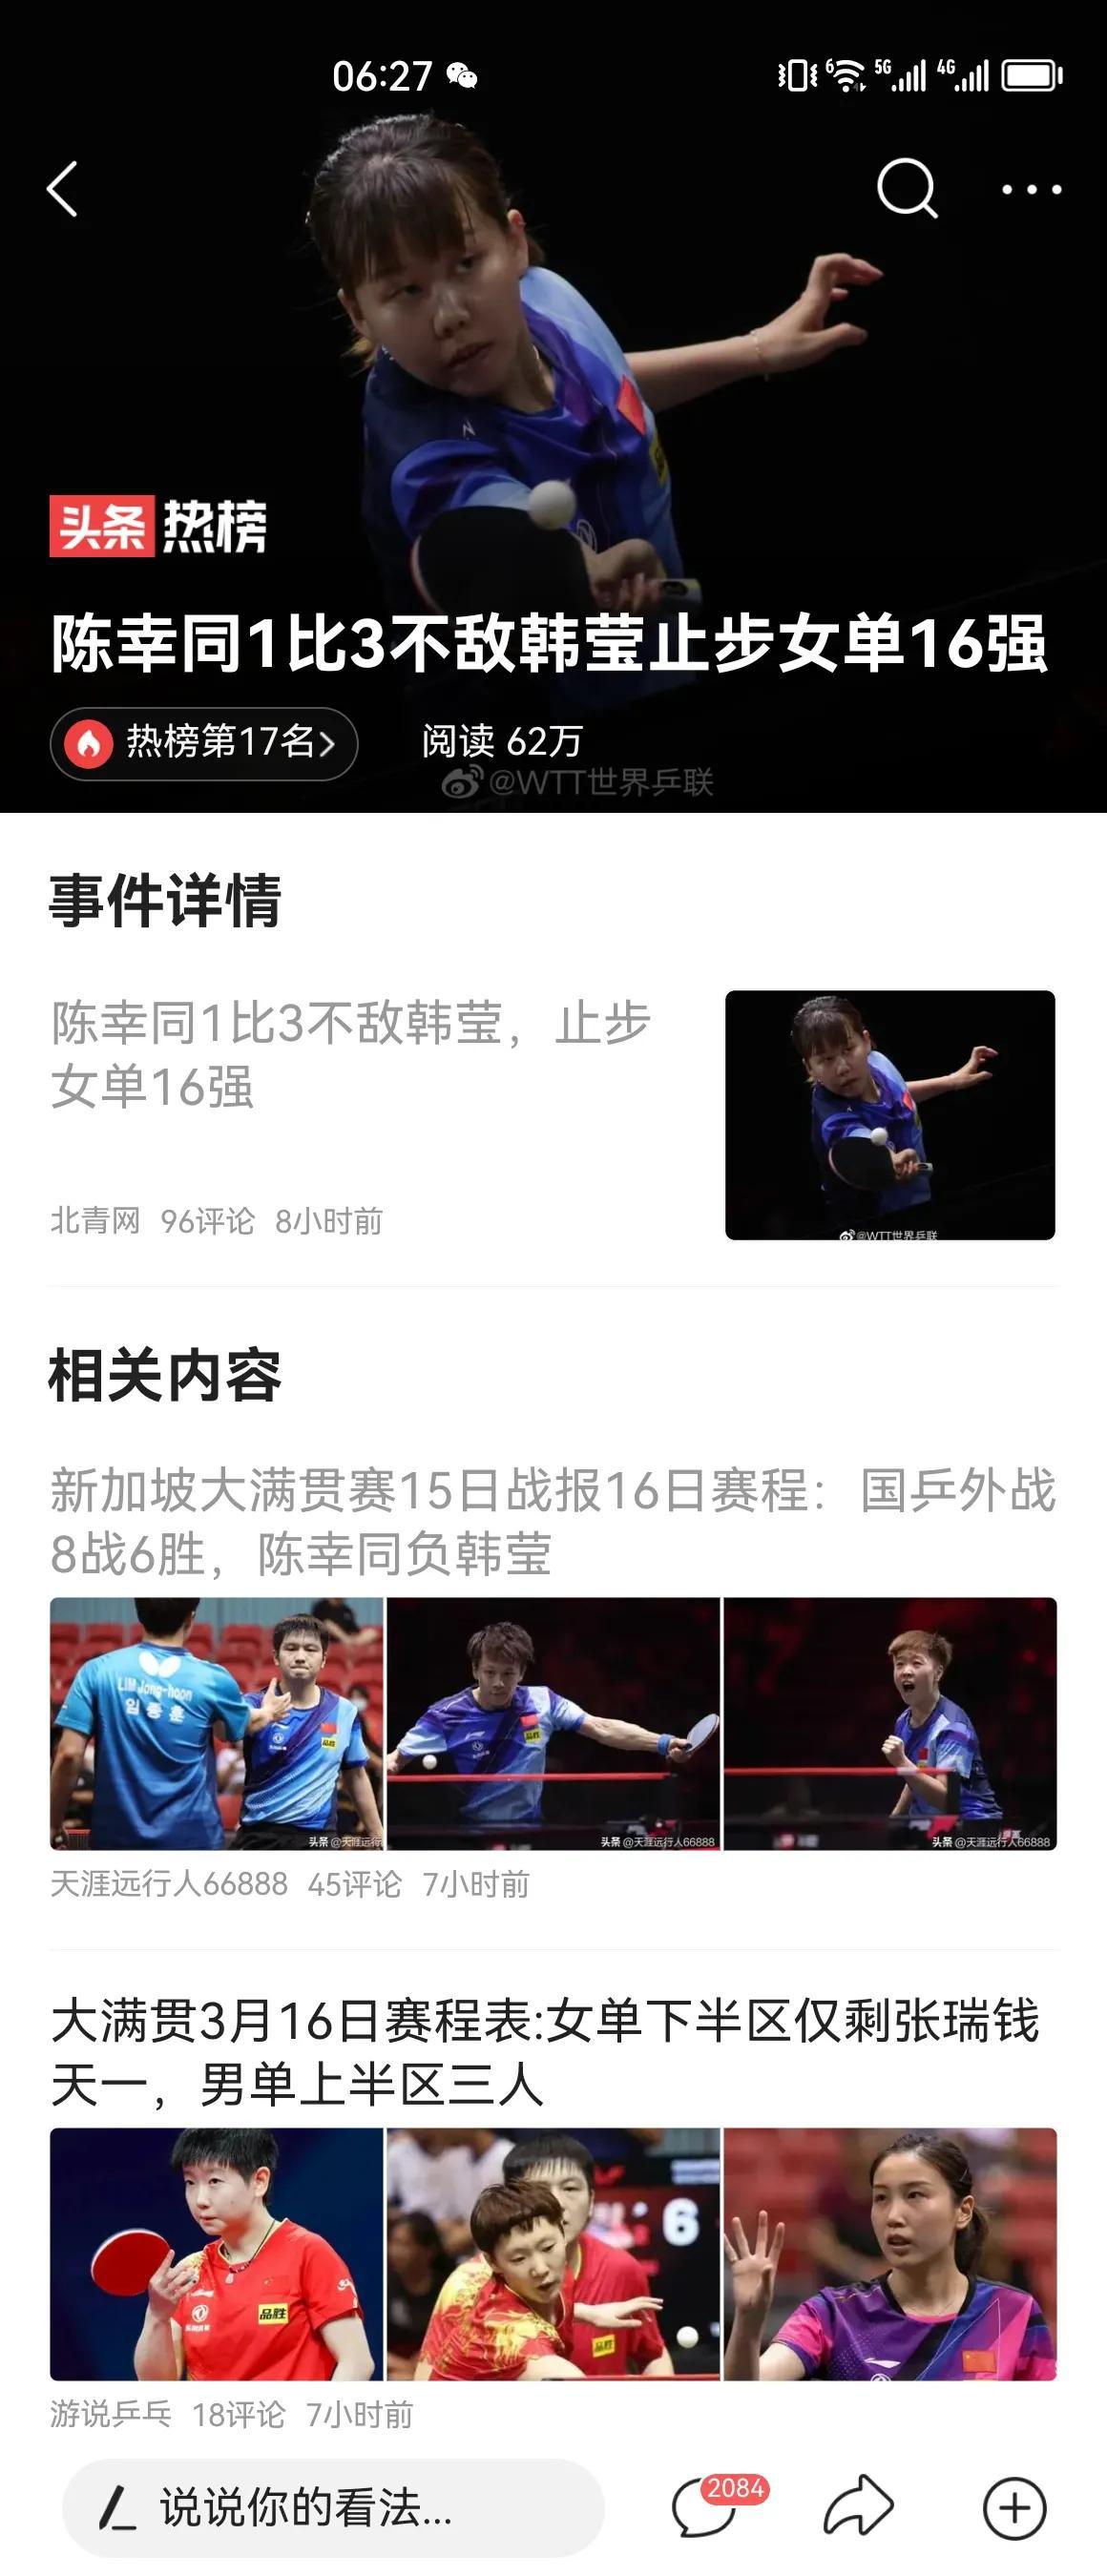  中国乒乓球队不知道是自身实力下降了，还是海外兵团、外国球员水平提高了，反正是，(1)